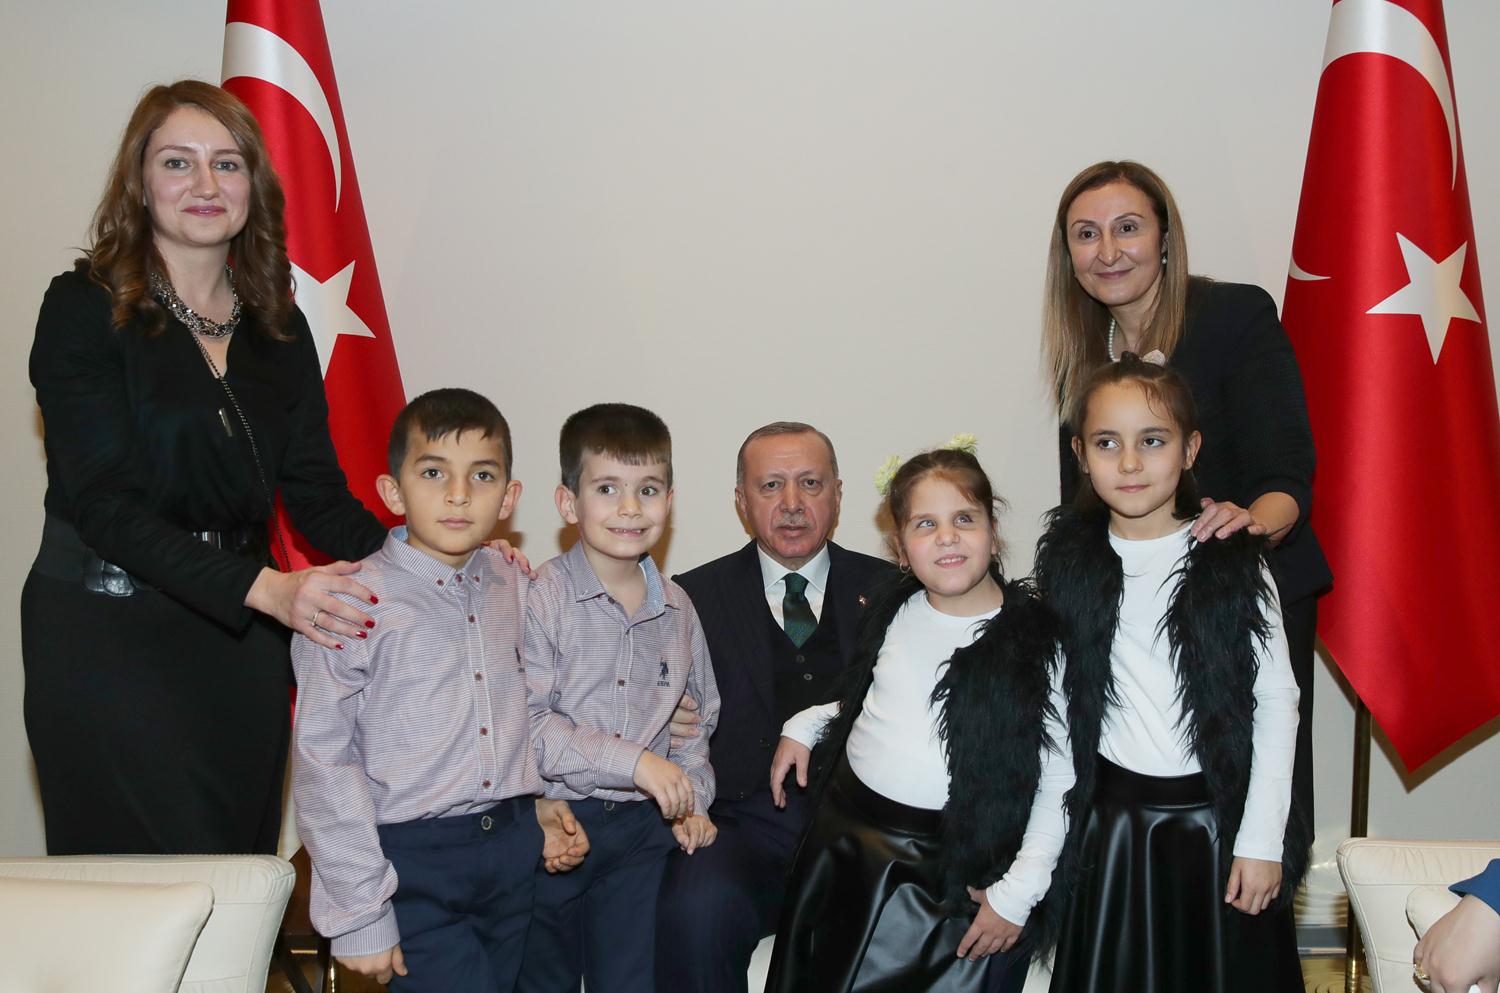 Cumhurbaşkanı Erdoğan'ın da öğrencilere, görme engelliler için hazırlanan özel saatlerden hediye ettiği öğrenildi.